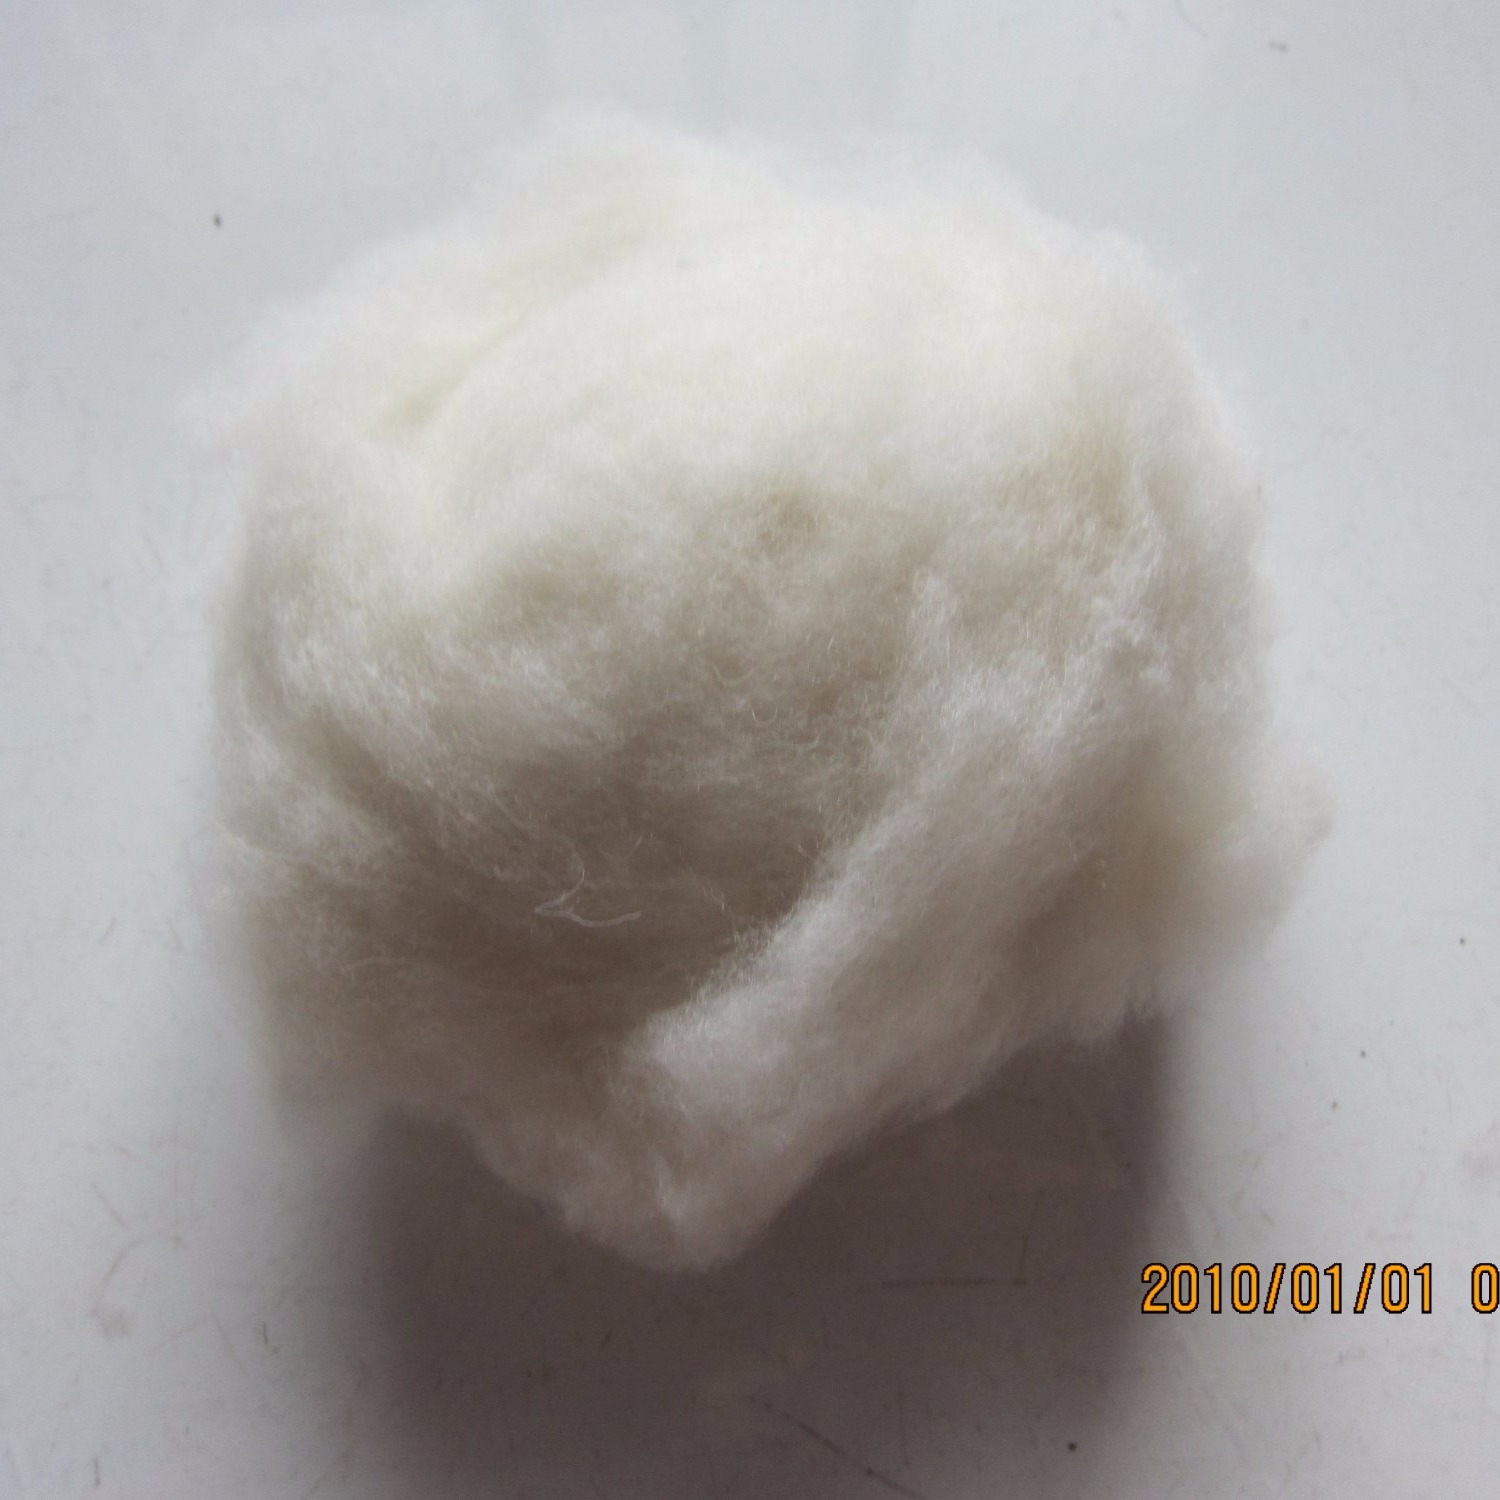 原料 牦牛绒 直销可免费拿样包邮 驼绒 绵羊绒 高端羊绒精品 山羊绒原料3